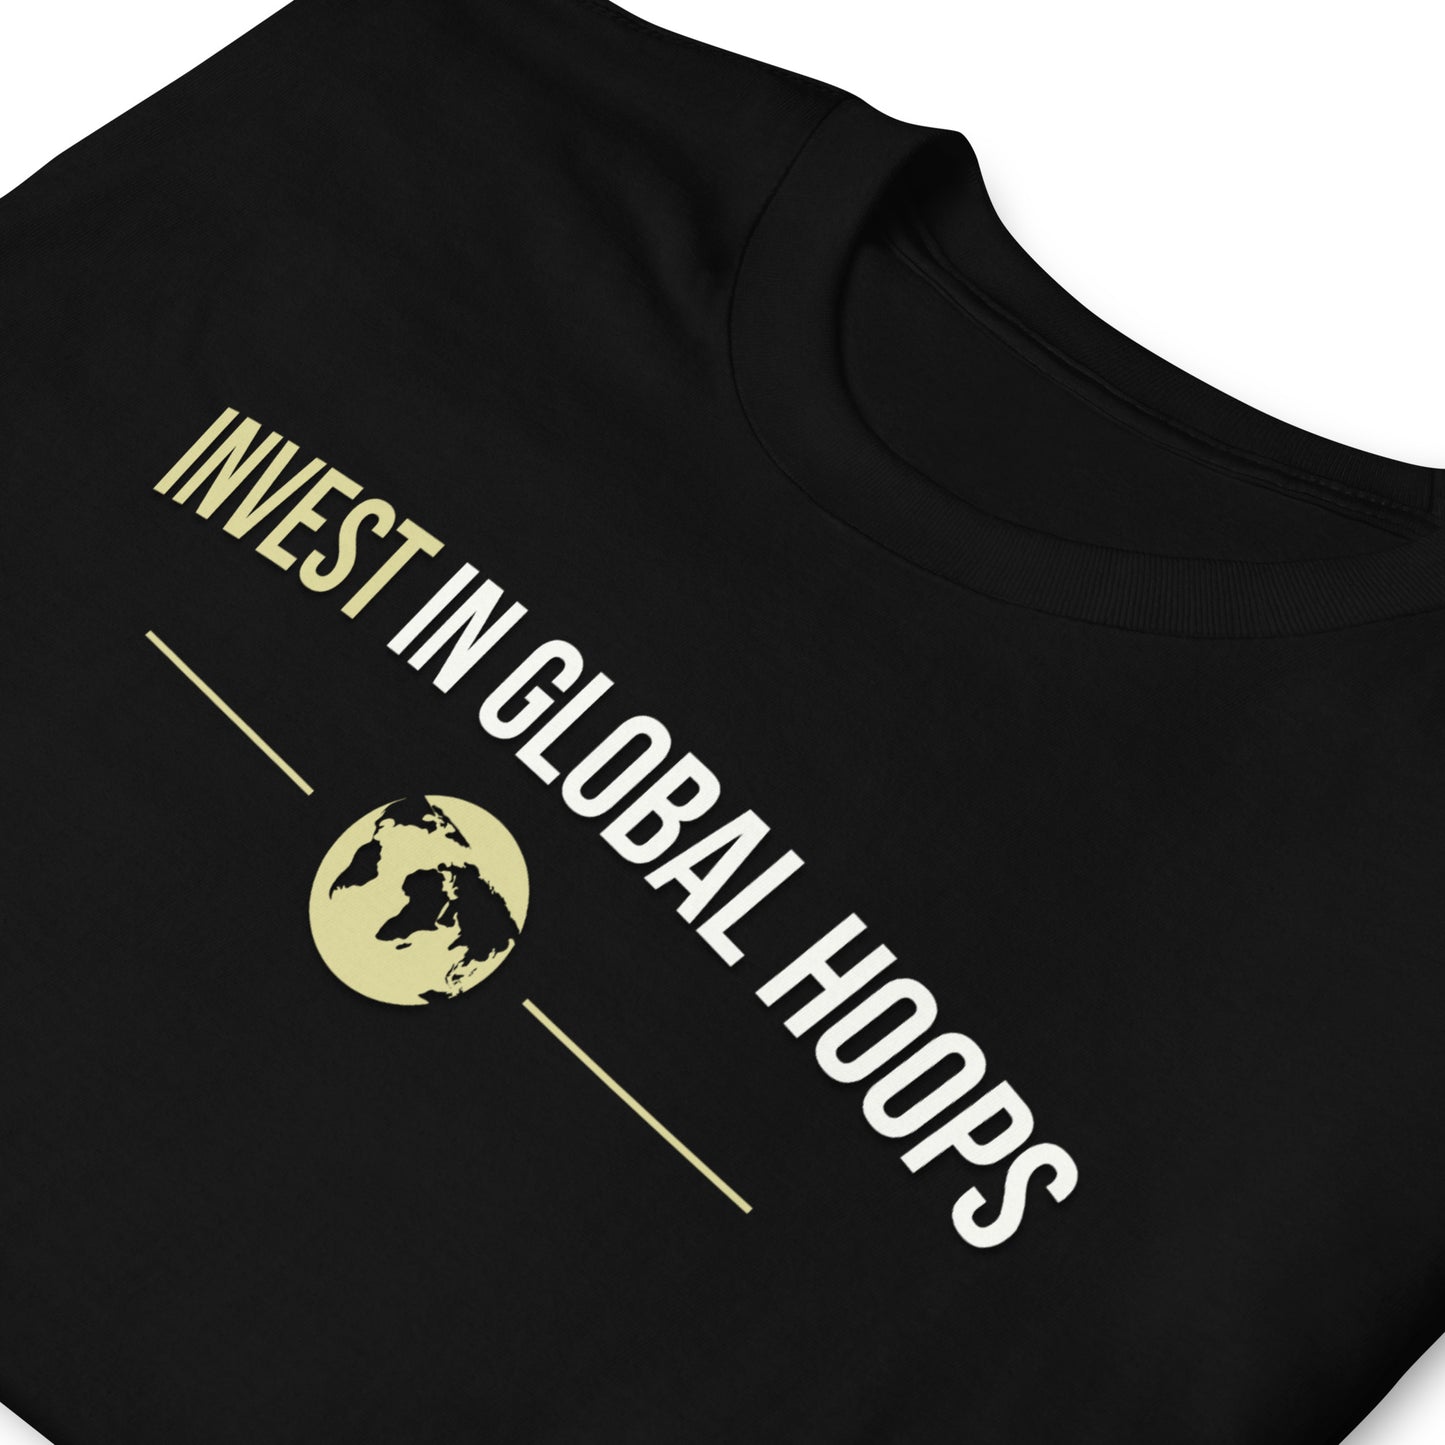 "Invest in Global Hoops" Tee